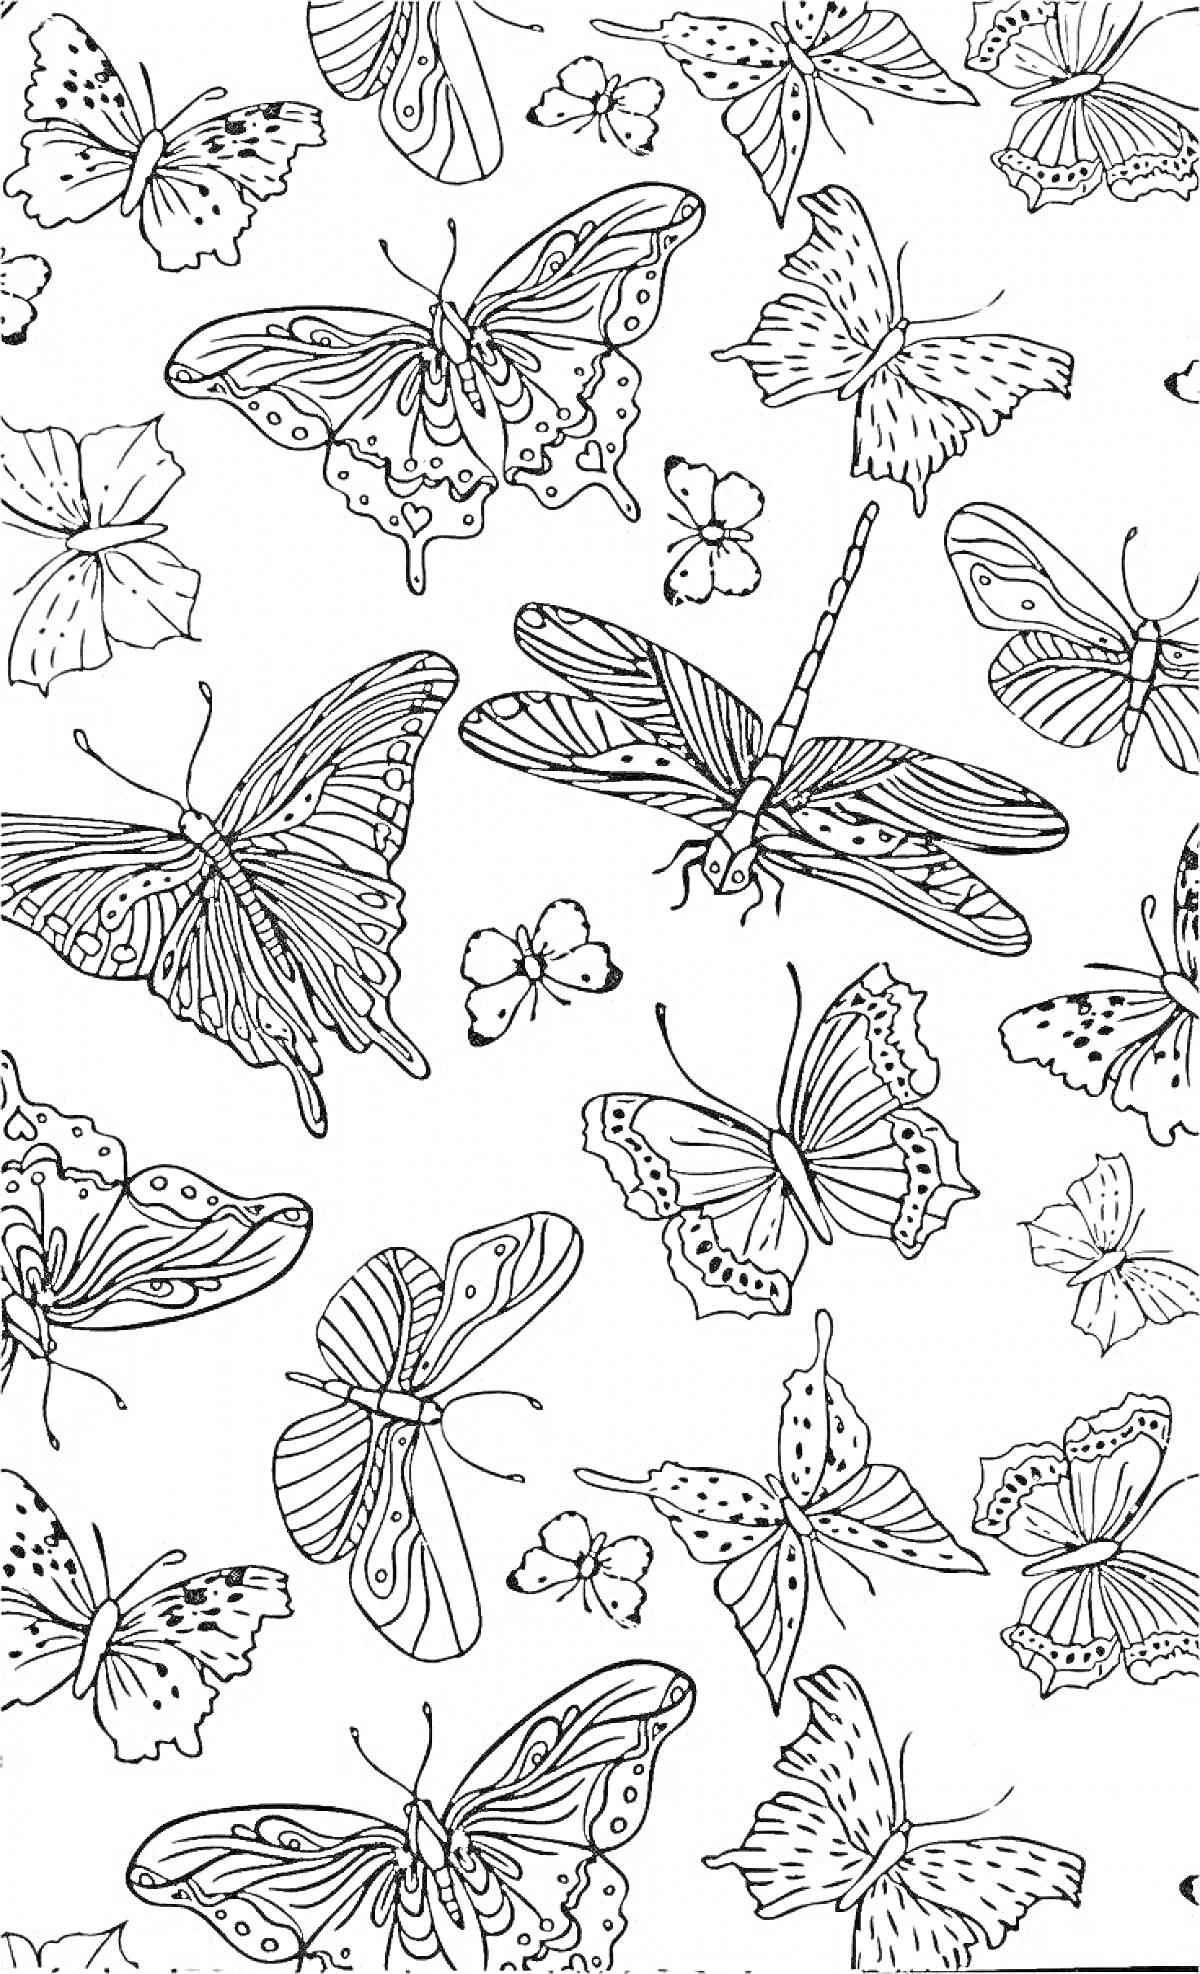 Раскраска Раскраска с множеством бабочек и стрекоз на одном листе